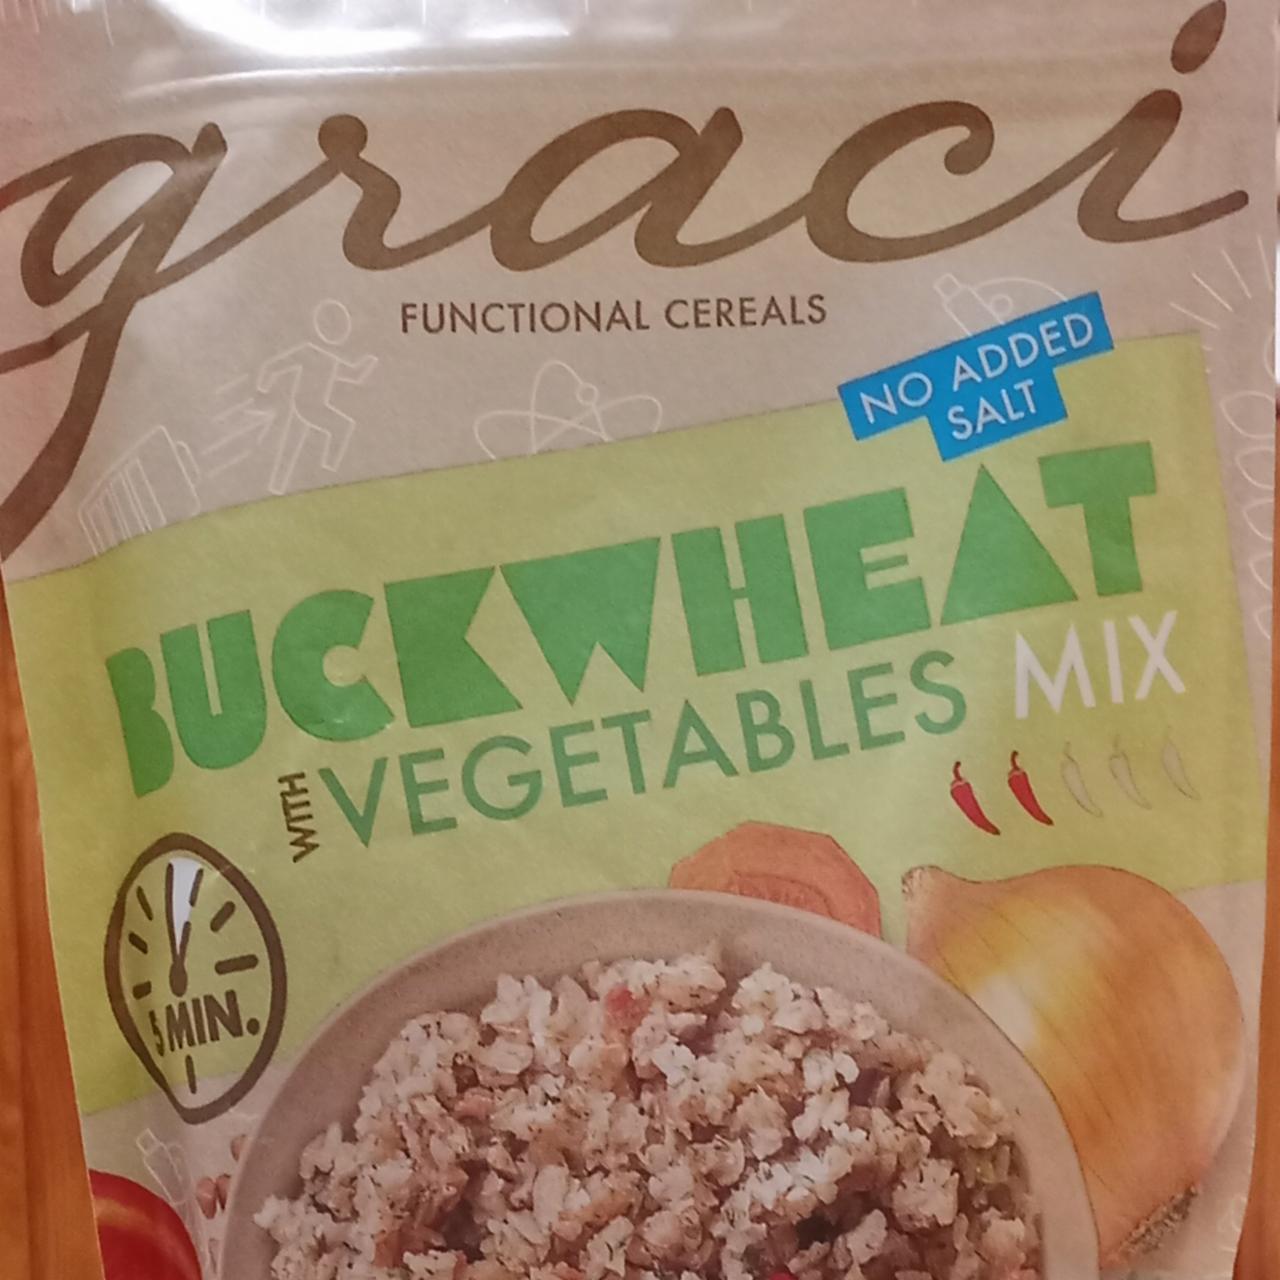 Fotografie - Buckwheat vegetables mix Graci